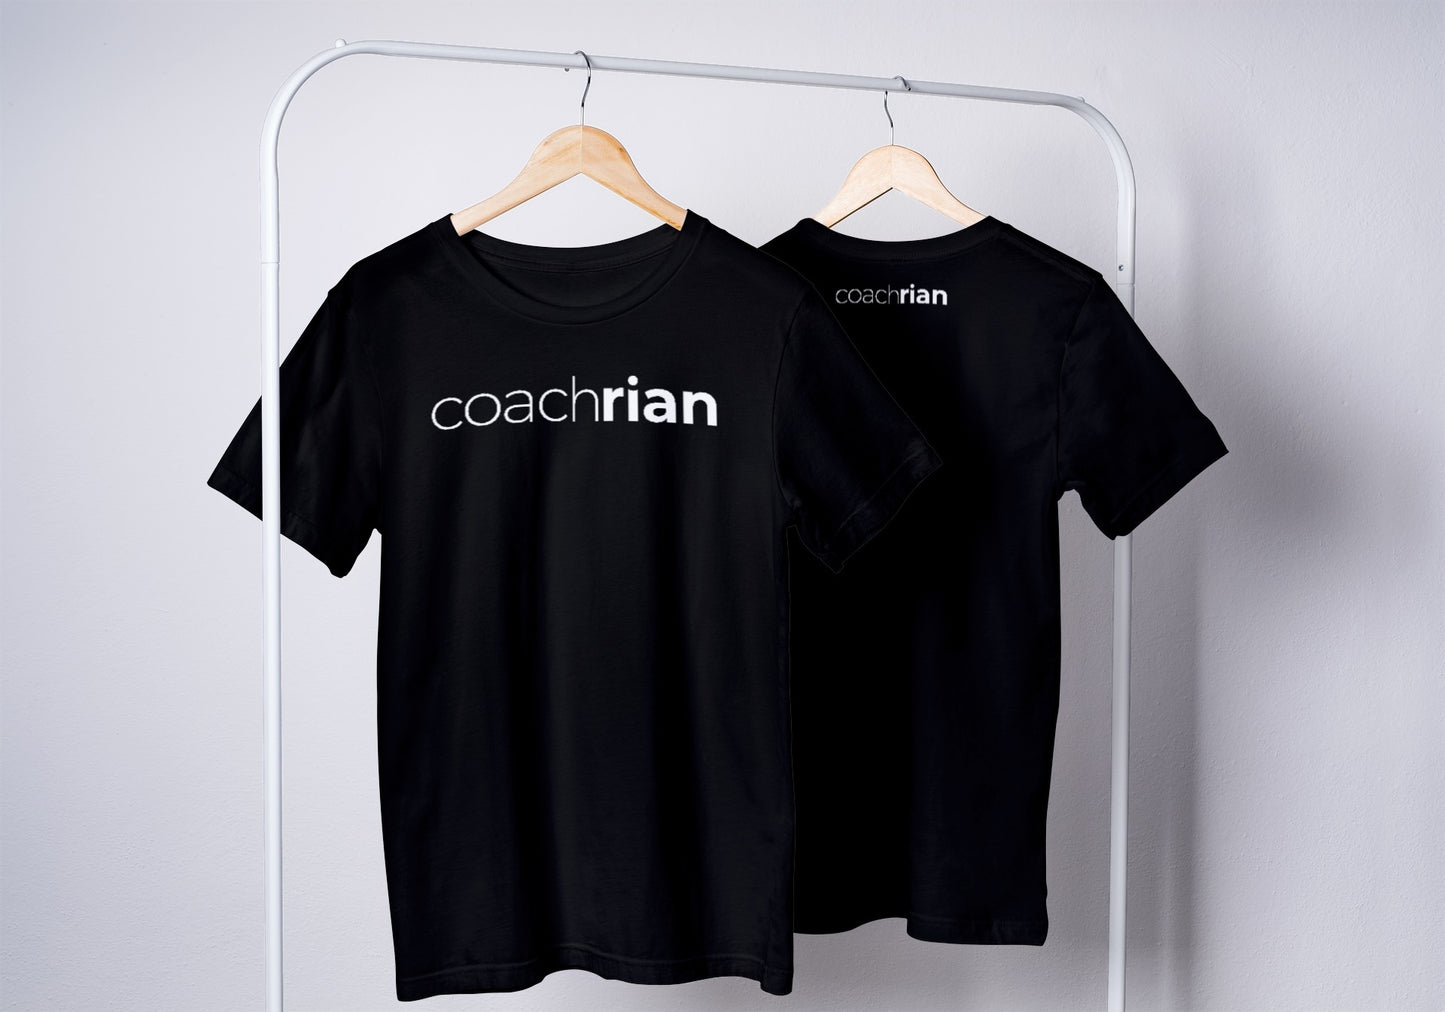 Coach Rian- Black Tshirt